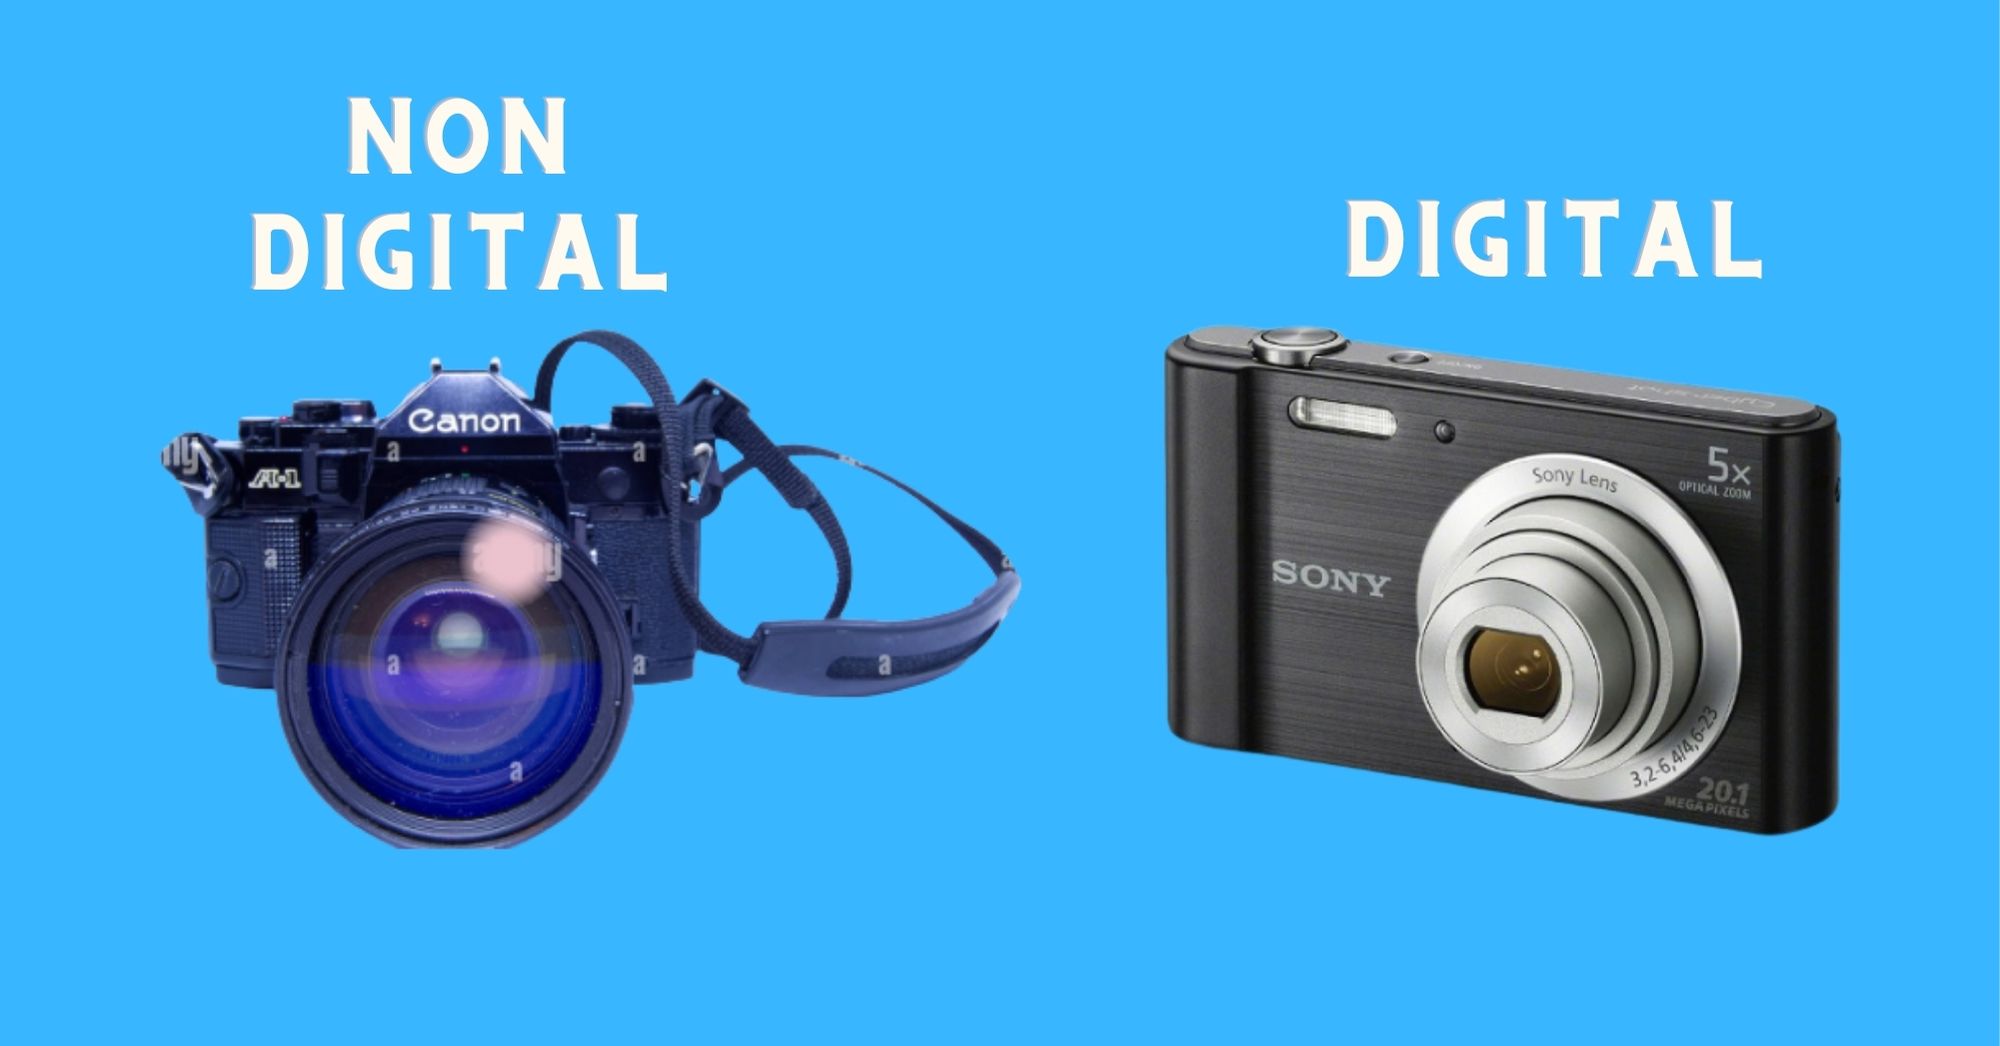 Digital vs nondigital camera